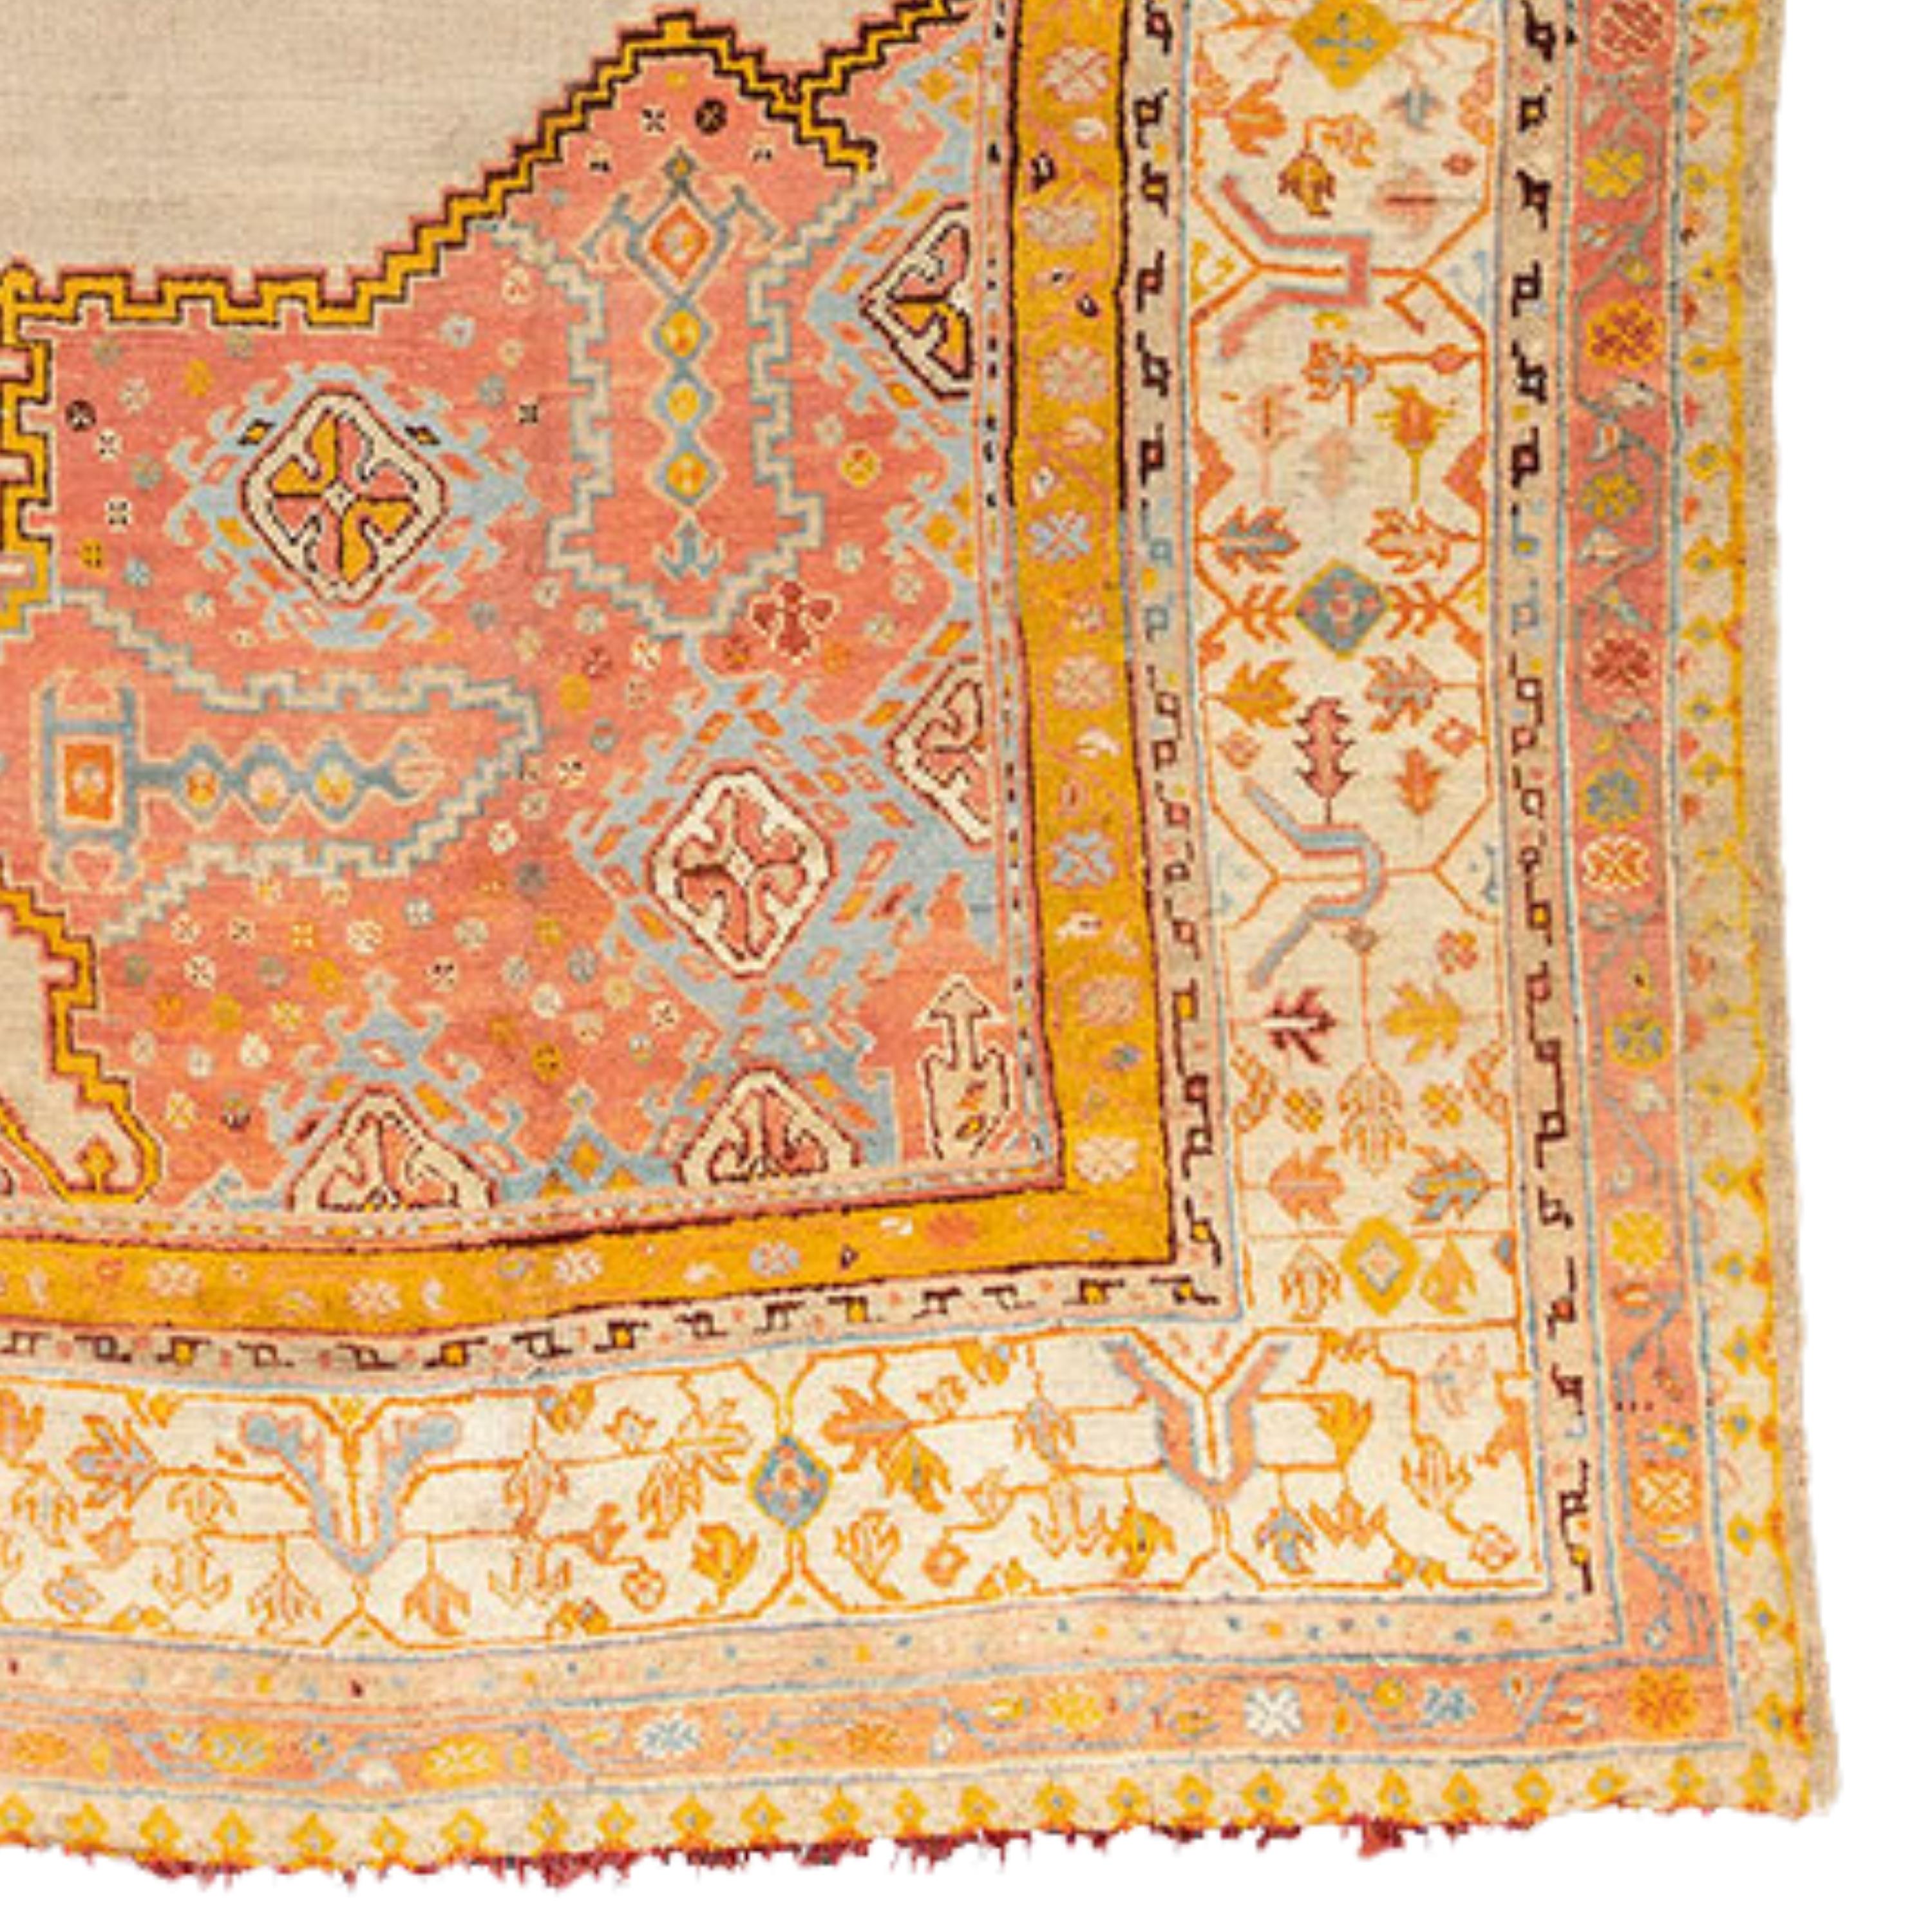 19th Century Antique Ushak Carpet - Large West Anatolia Ushak Rug Circa 1800’s, Antique Rug For Sale